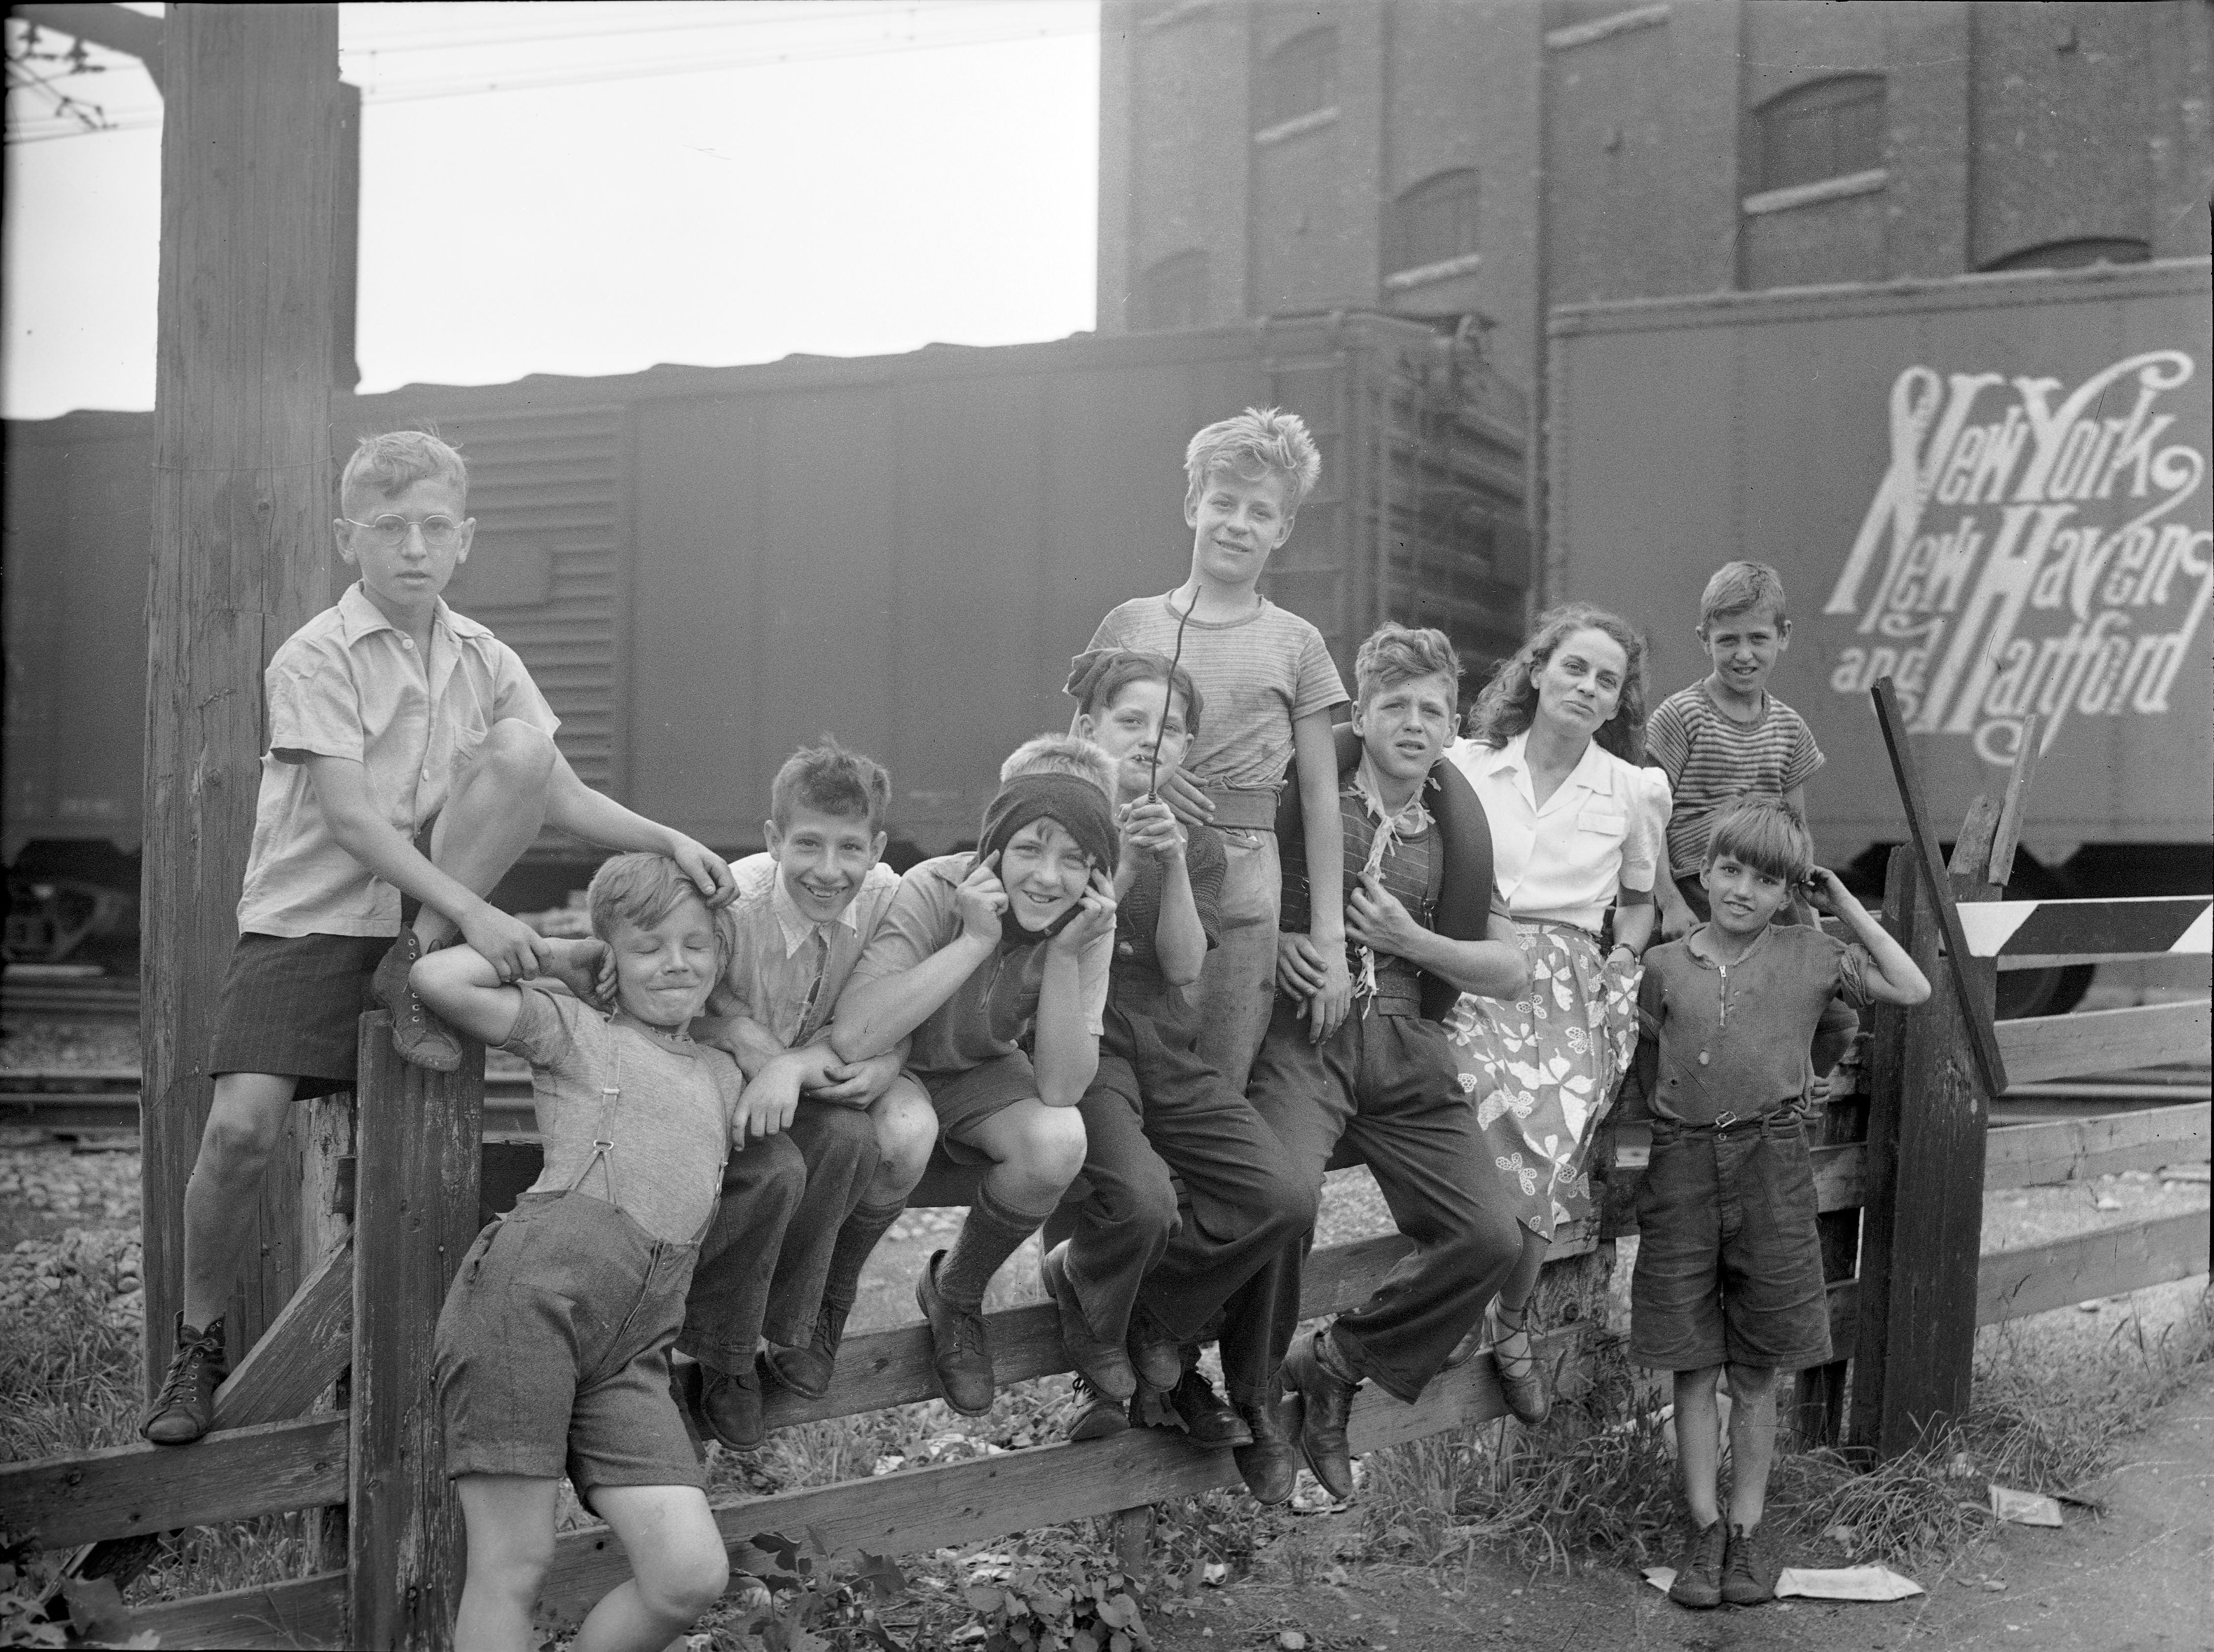 Gabrielle Roy entourée d'enfants dans le quartier Saint-Henri à Montréal. En arrière-plan des wagons de marchandise